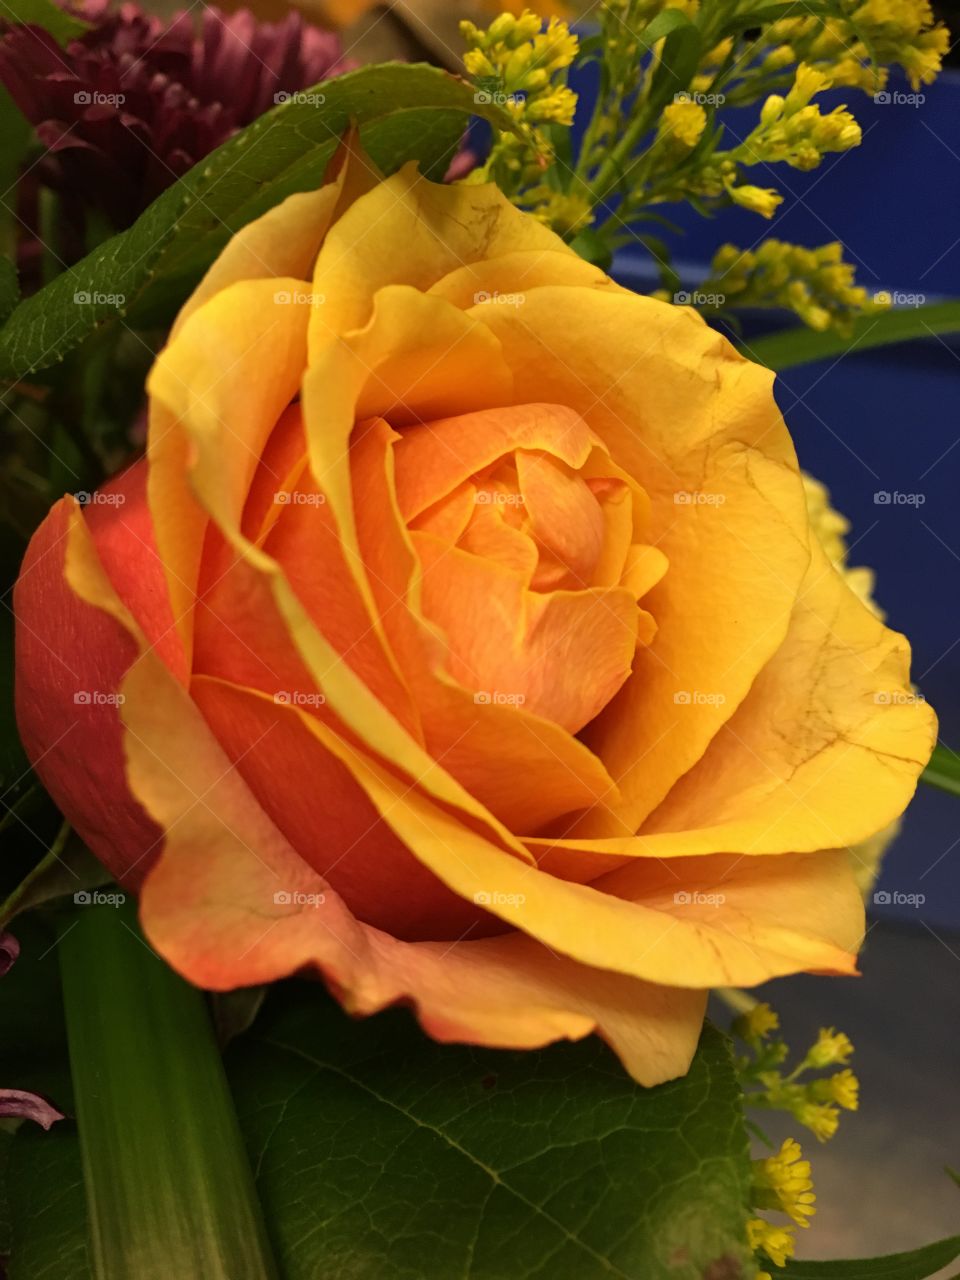 Orange & yellow rose 